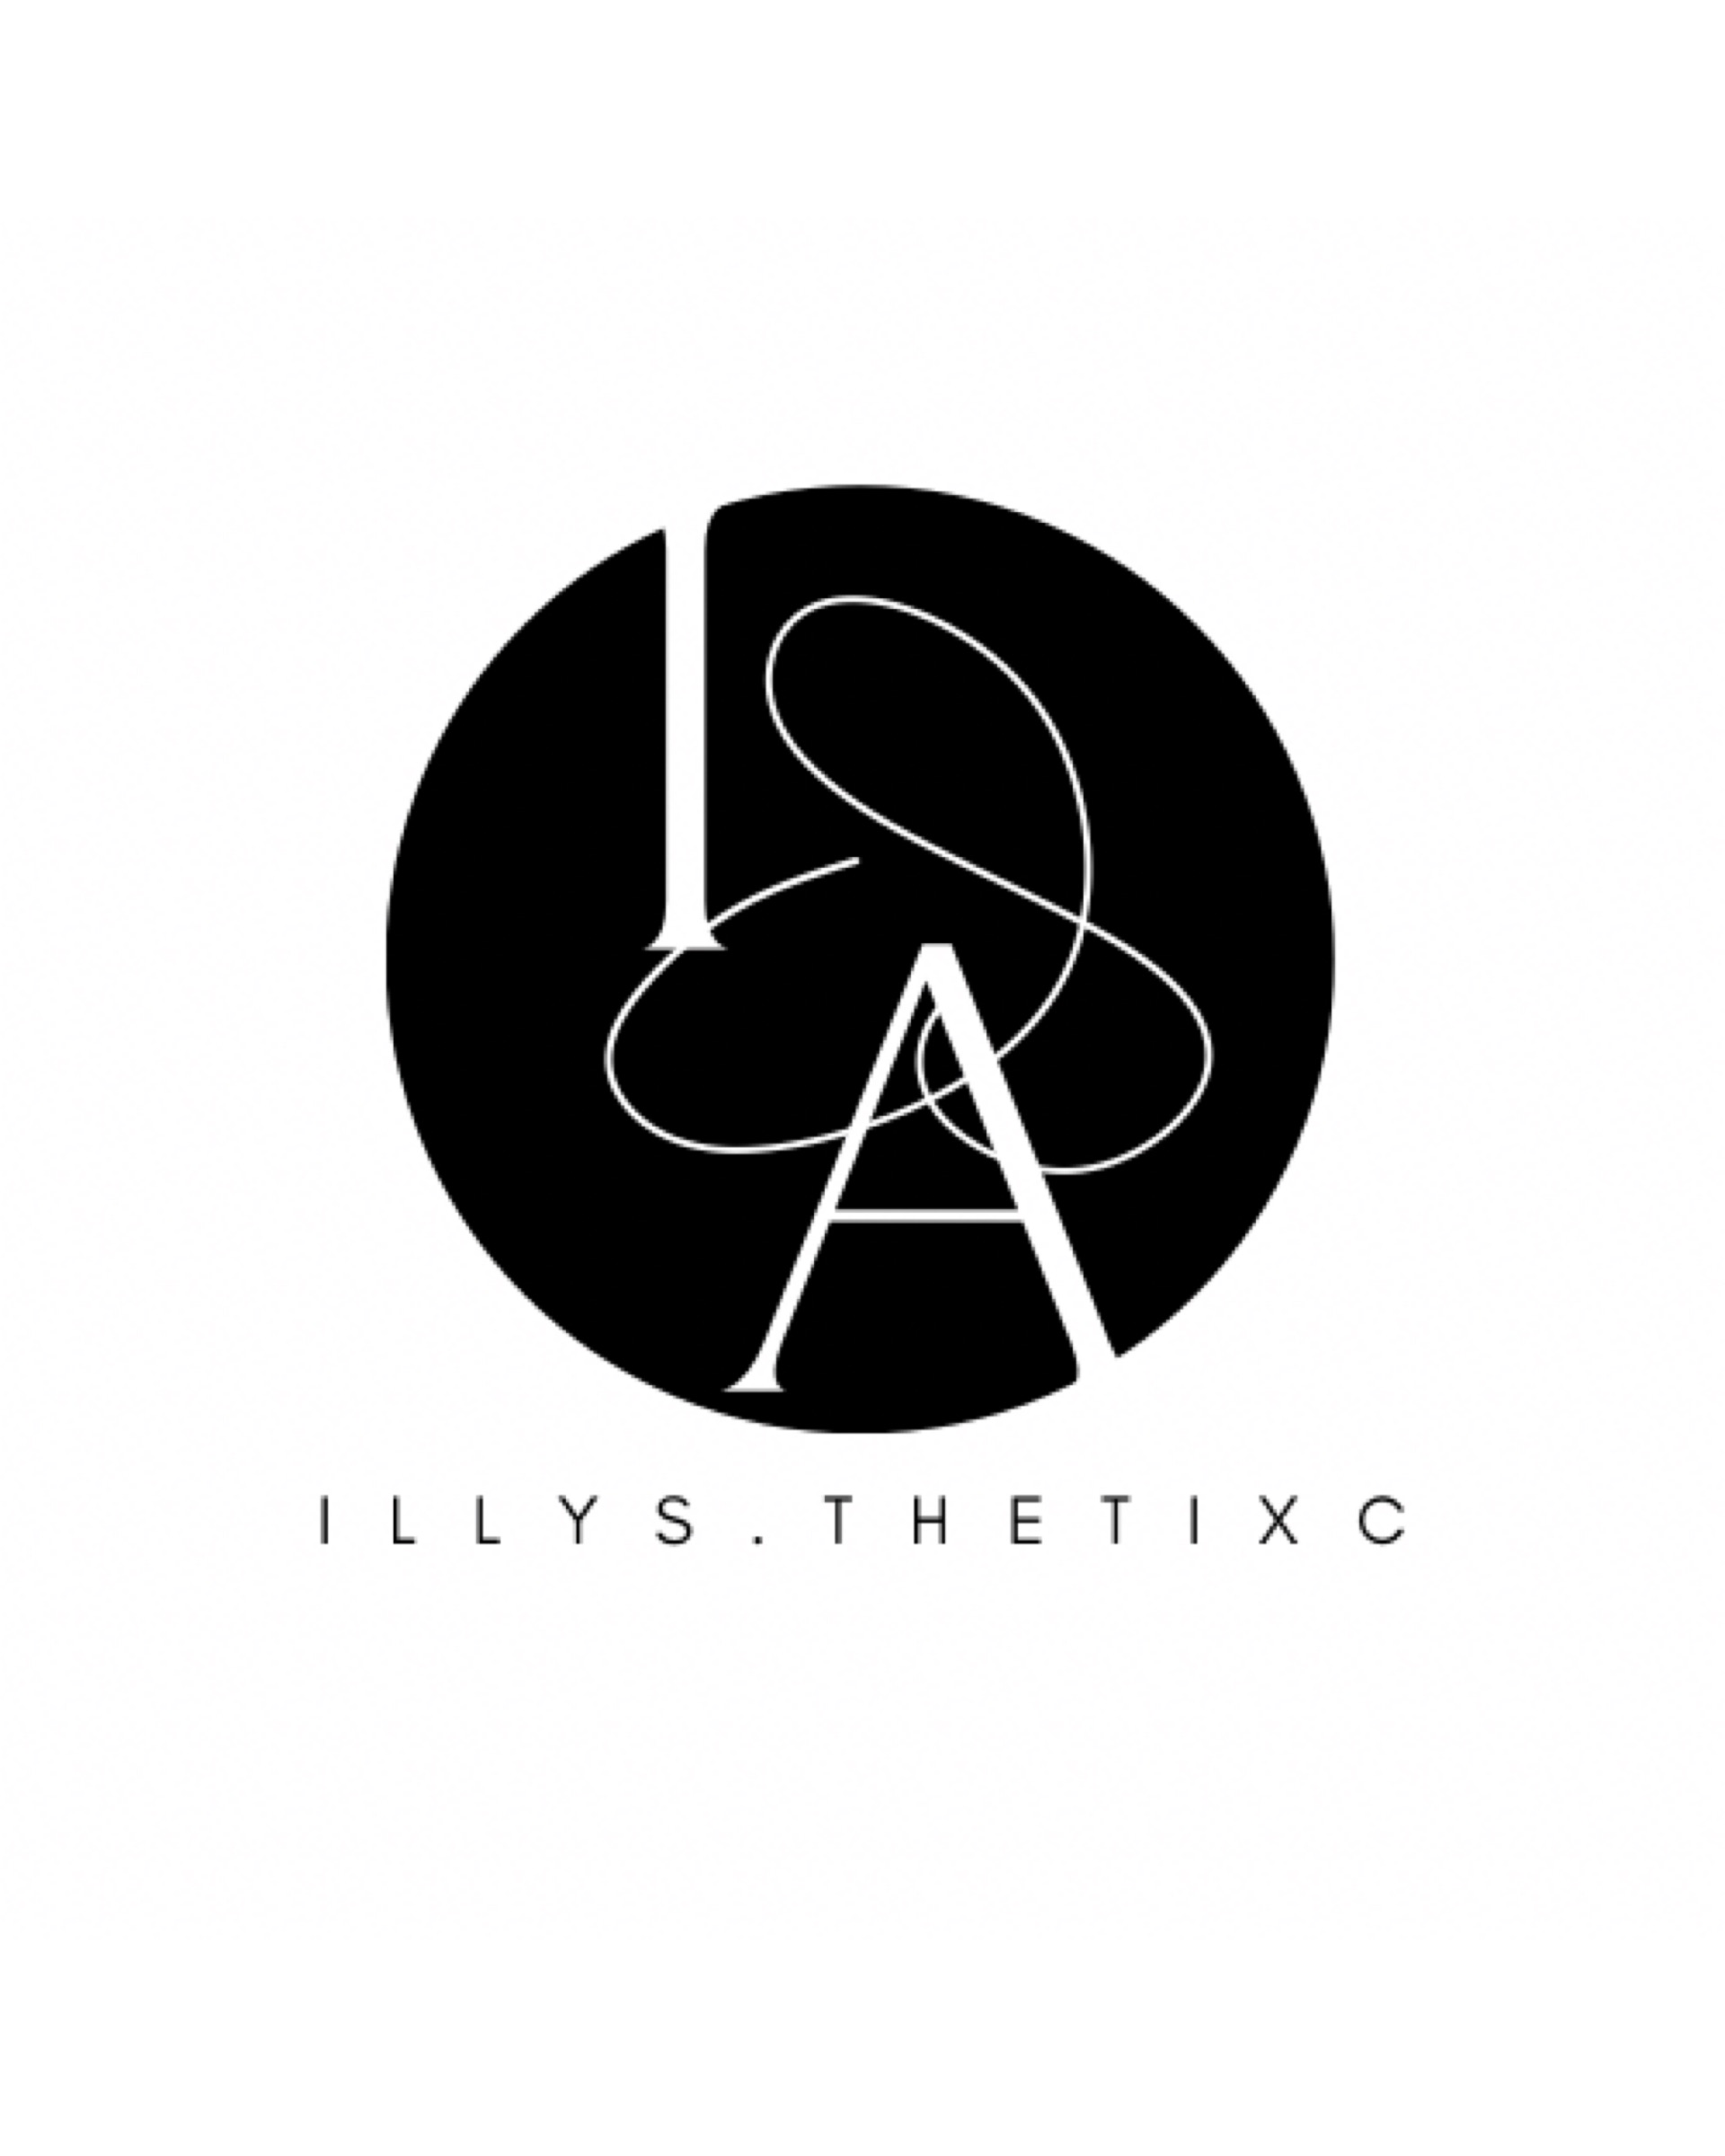 Illys.thetixc